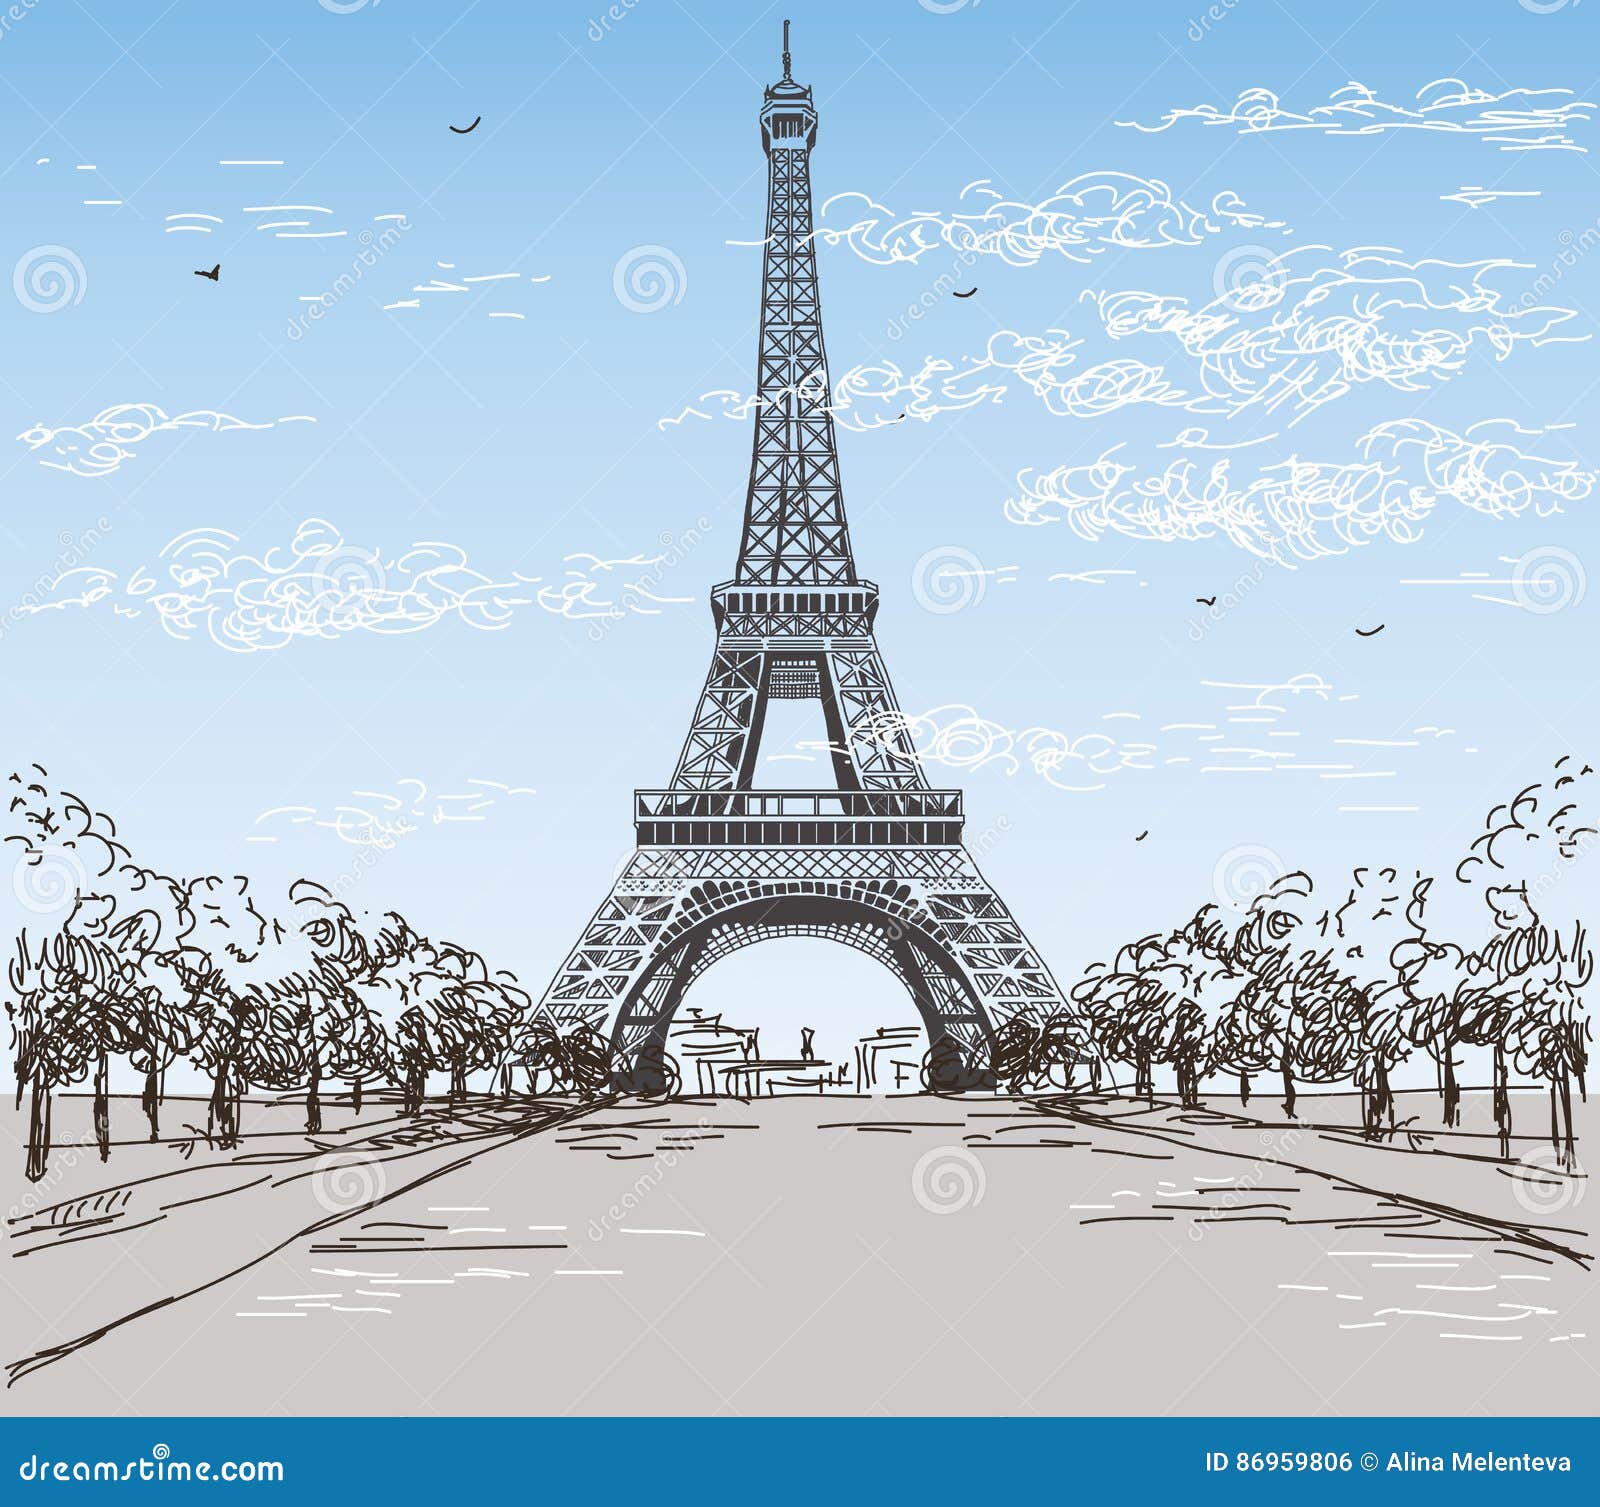 Paesaggio Con I Colori Della Torre Eiffel In Bianco E Nero Sul Blu Illustrazione Vettoriale Illustrazione Di Architettura Metallo